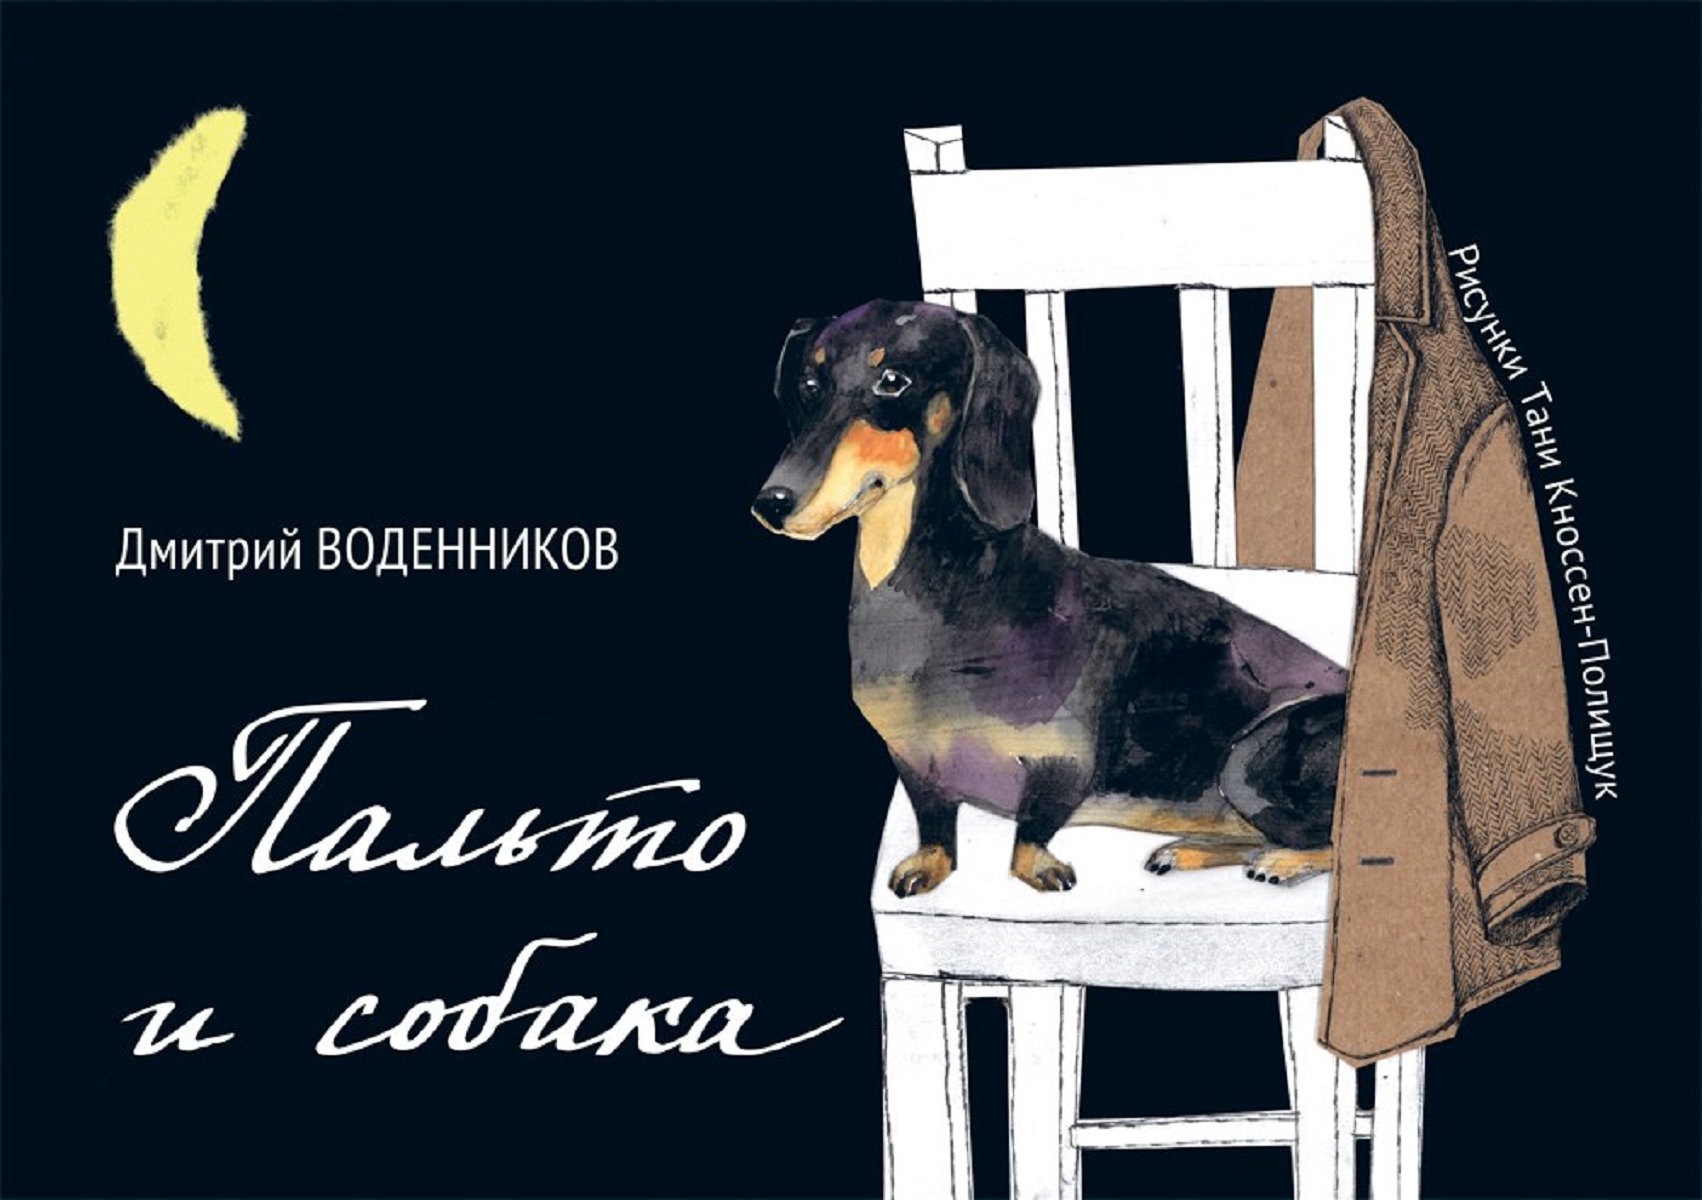 Пальто и собака. Дмитрий Воденников